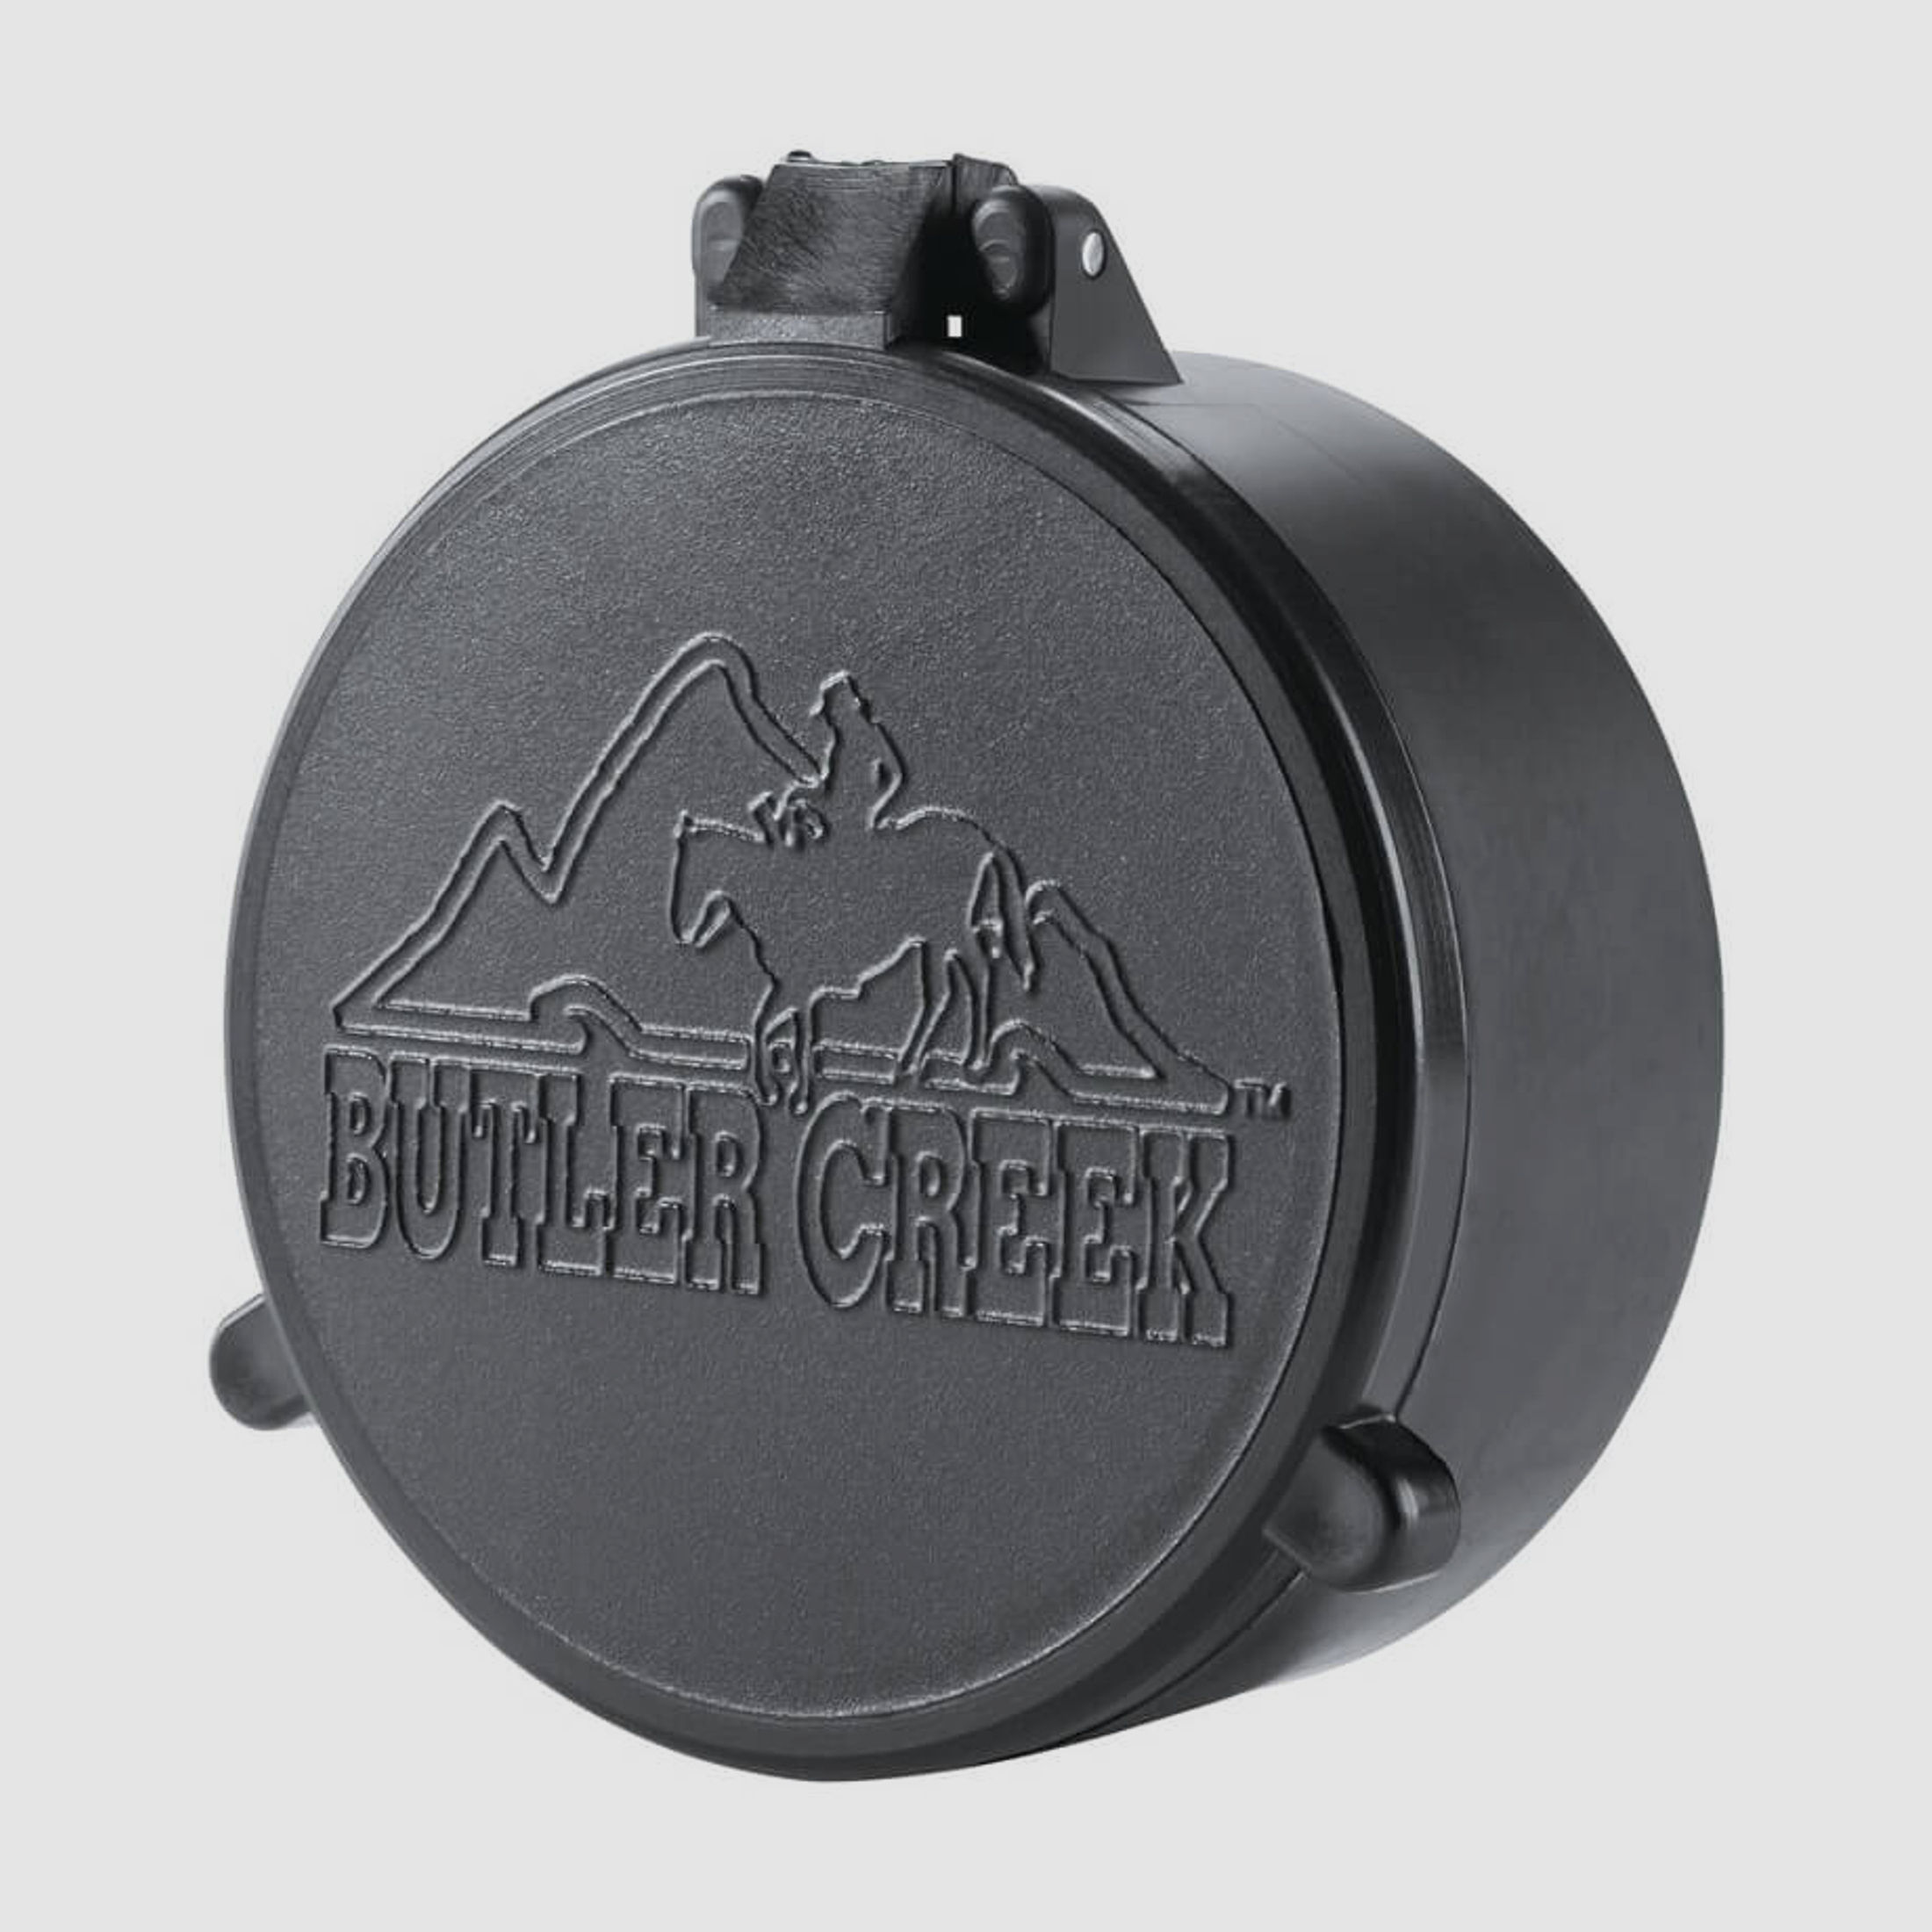 Butler Creek Objektiv Schutzkappe - 45,7mm